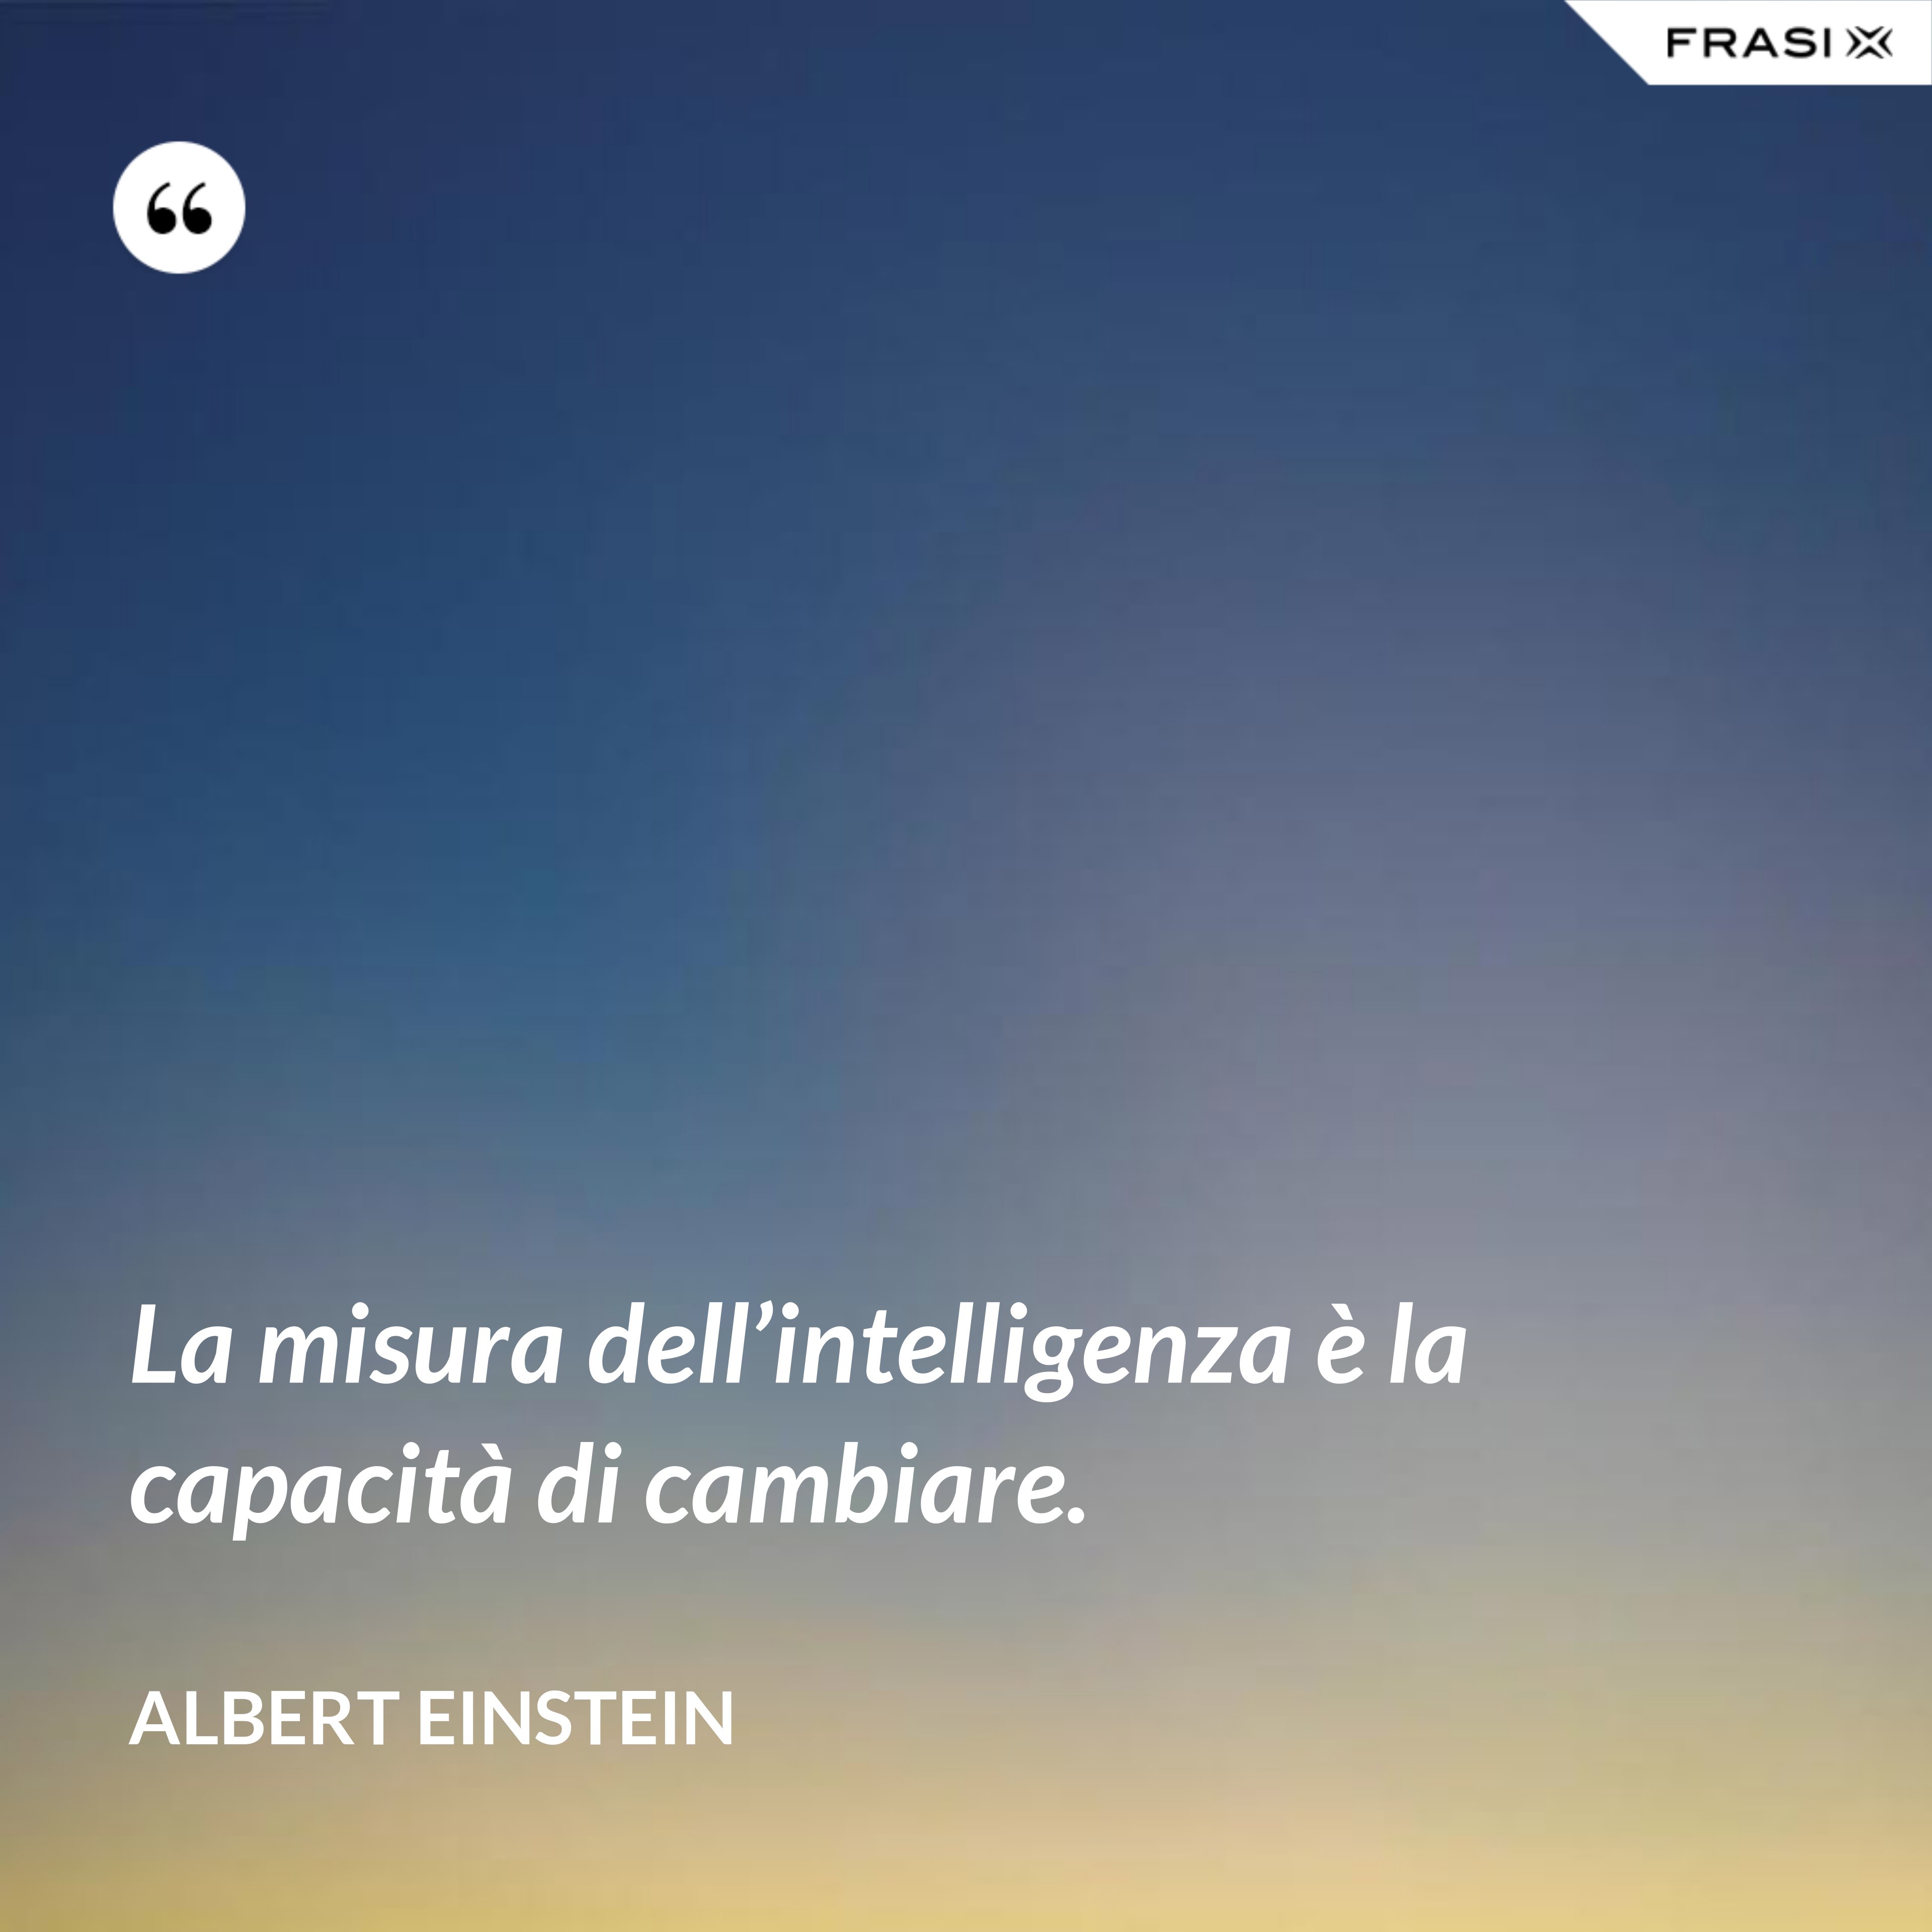 La misura dell’intelligenza è la capacità di cambiare. - Albert Einstein